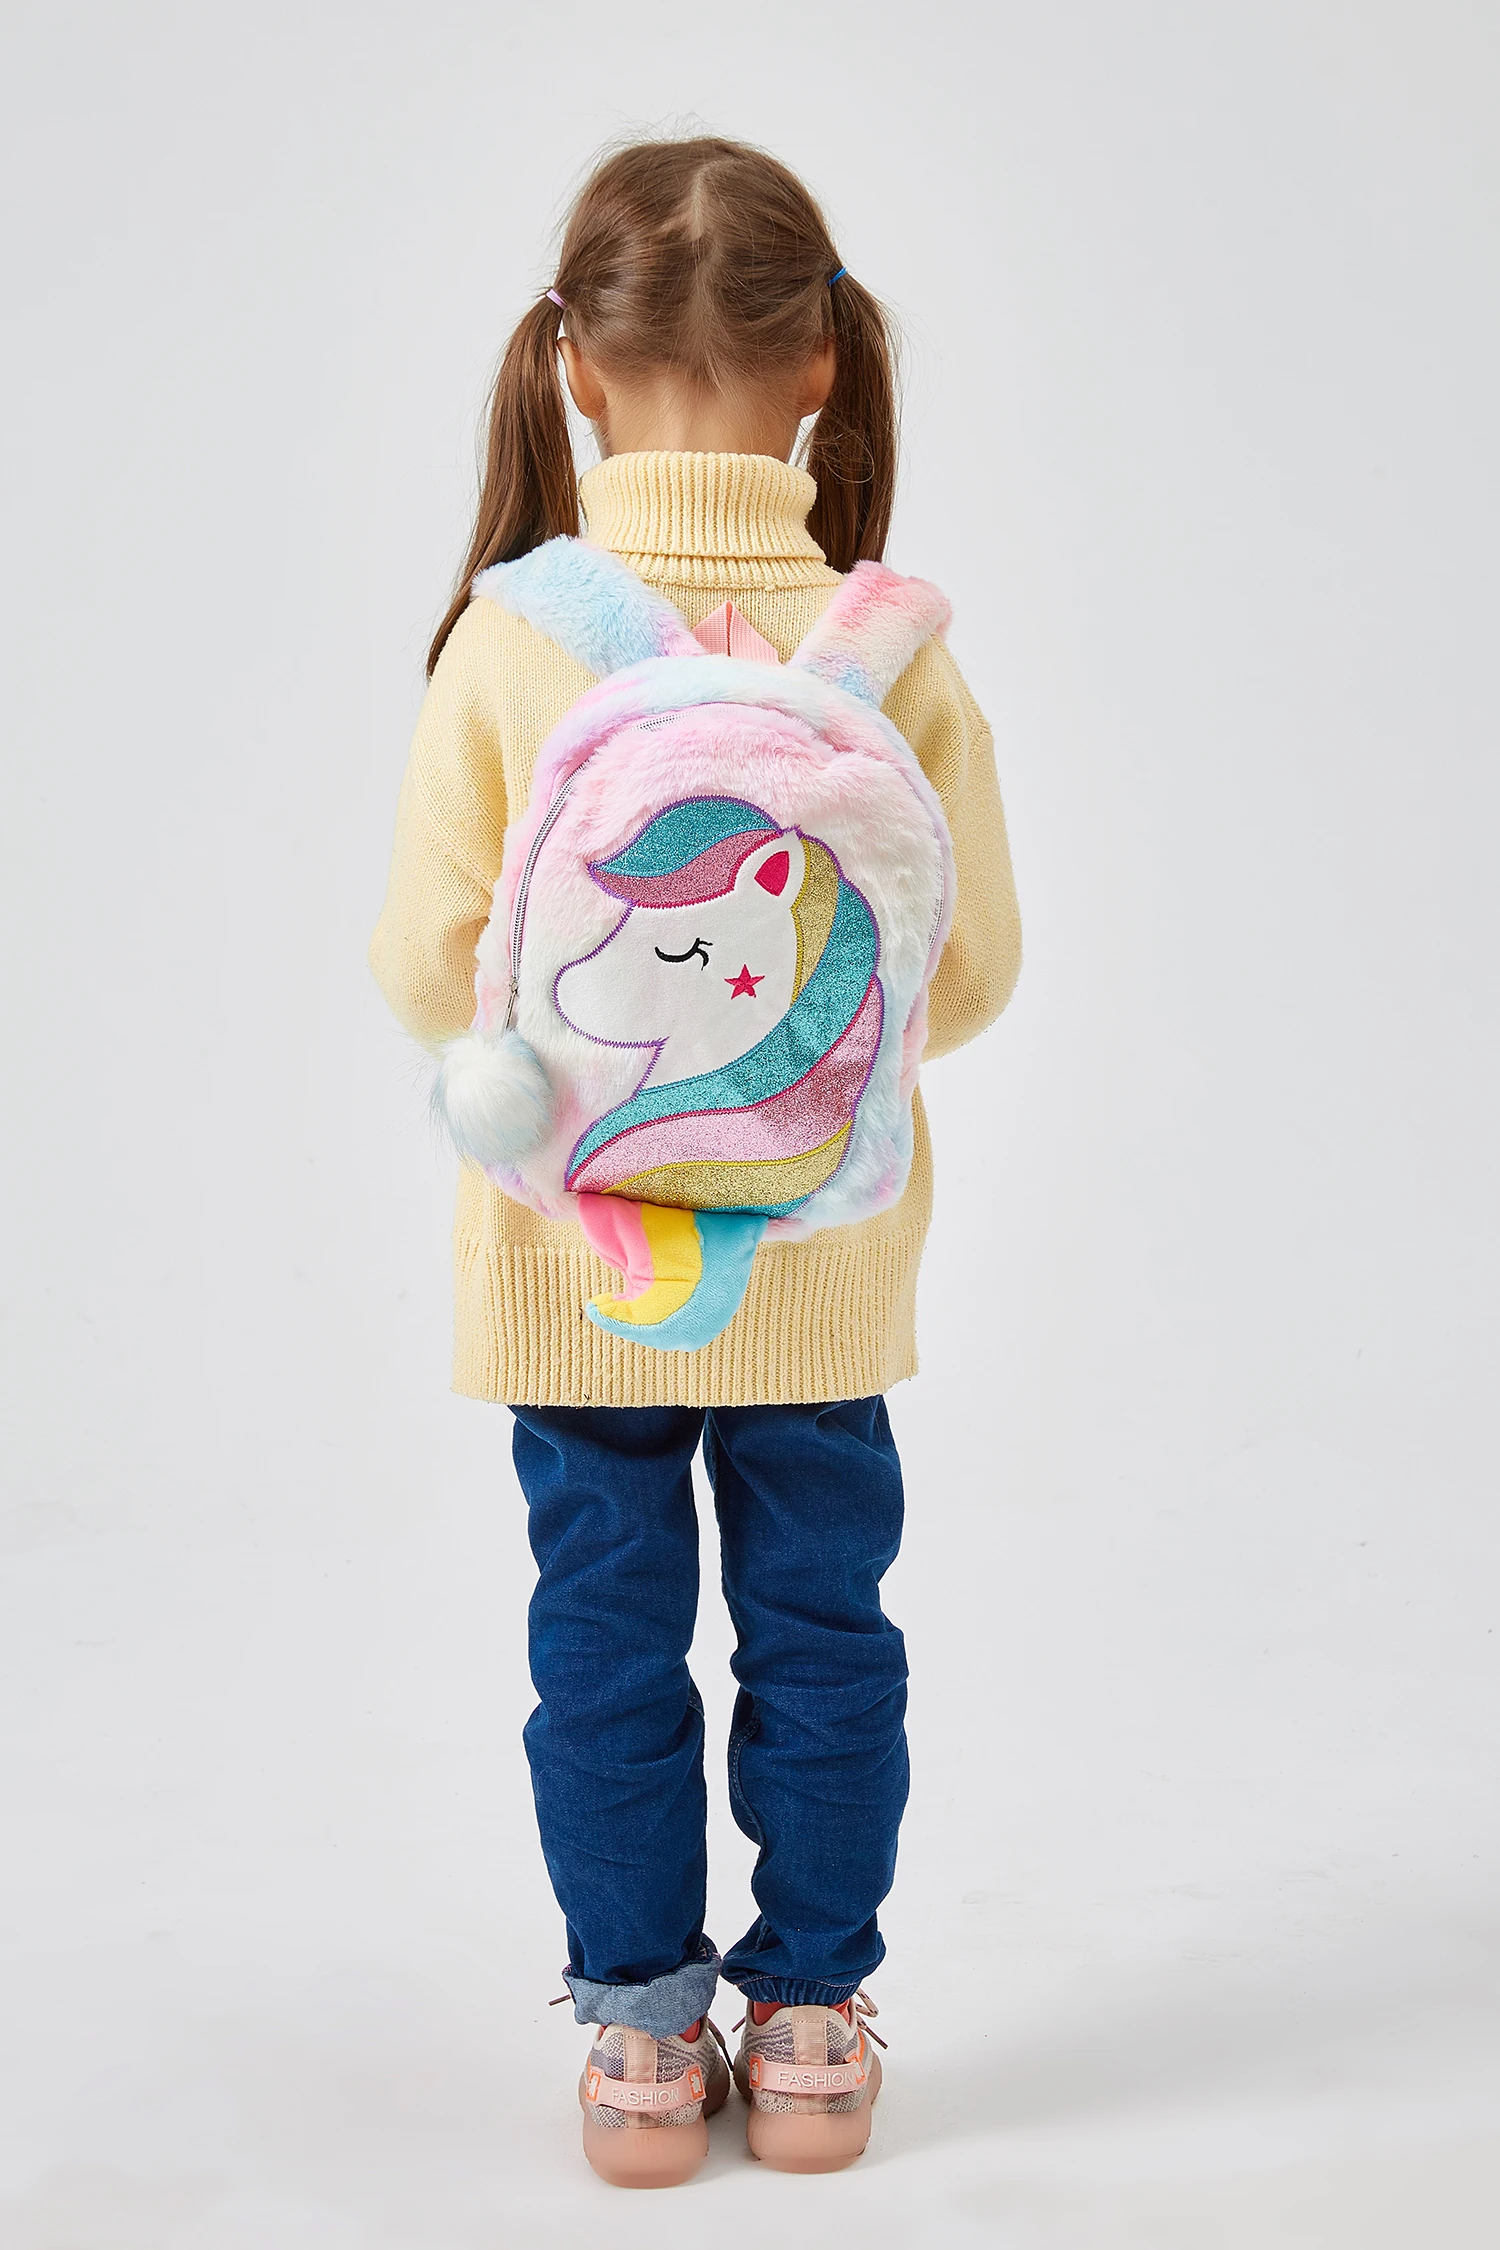 2020 Unicorn Rygsæk Til Piger Rainbow Pels Søde Schoolbags Mini Fashion Rejse Rygsække Tasken Gave